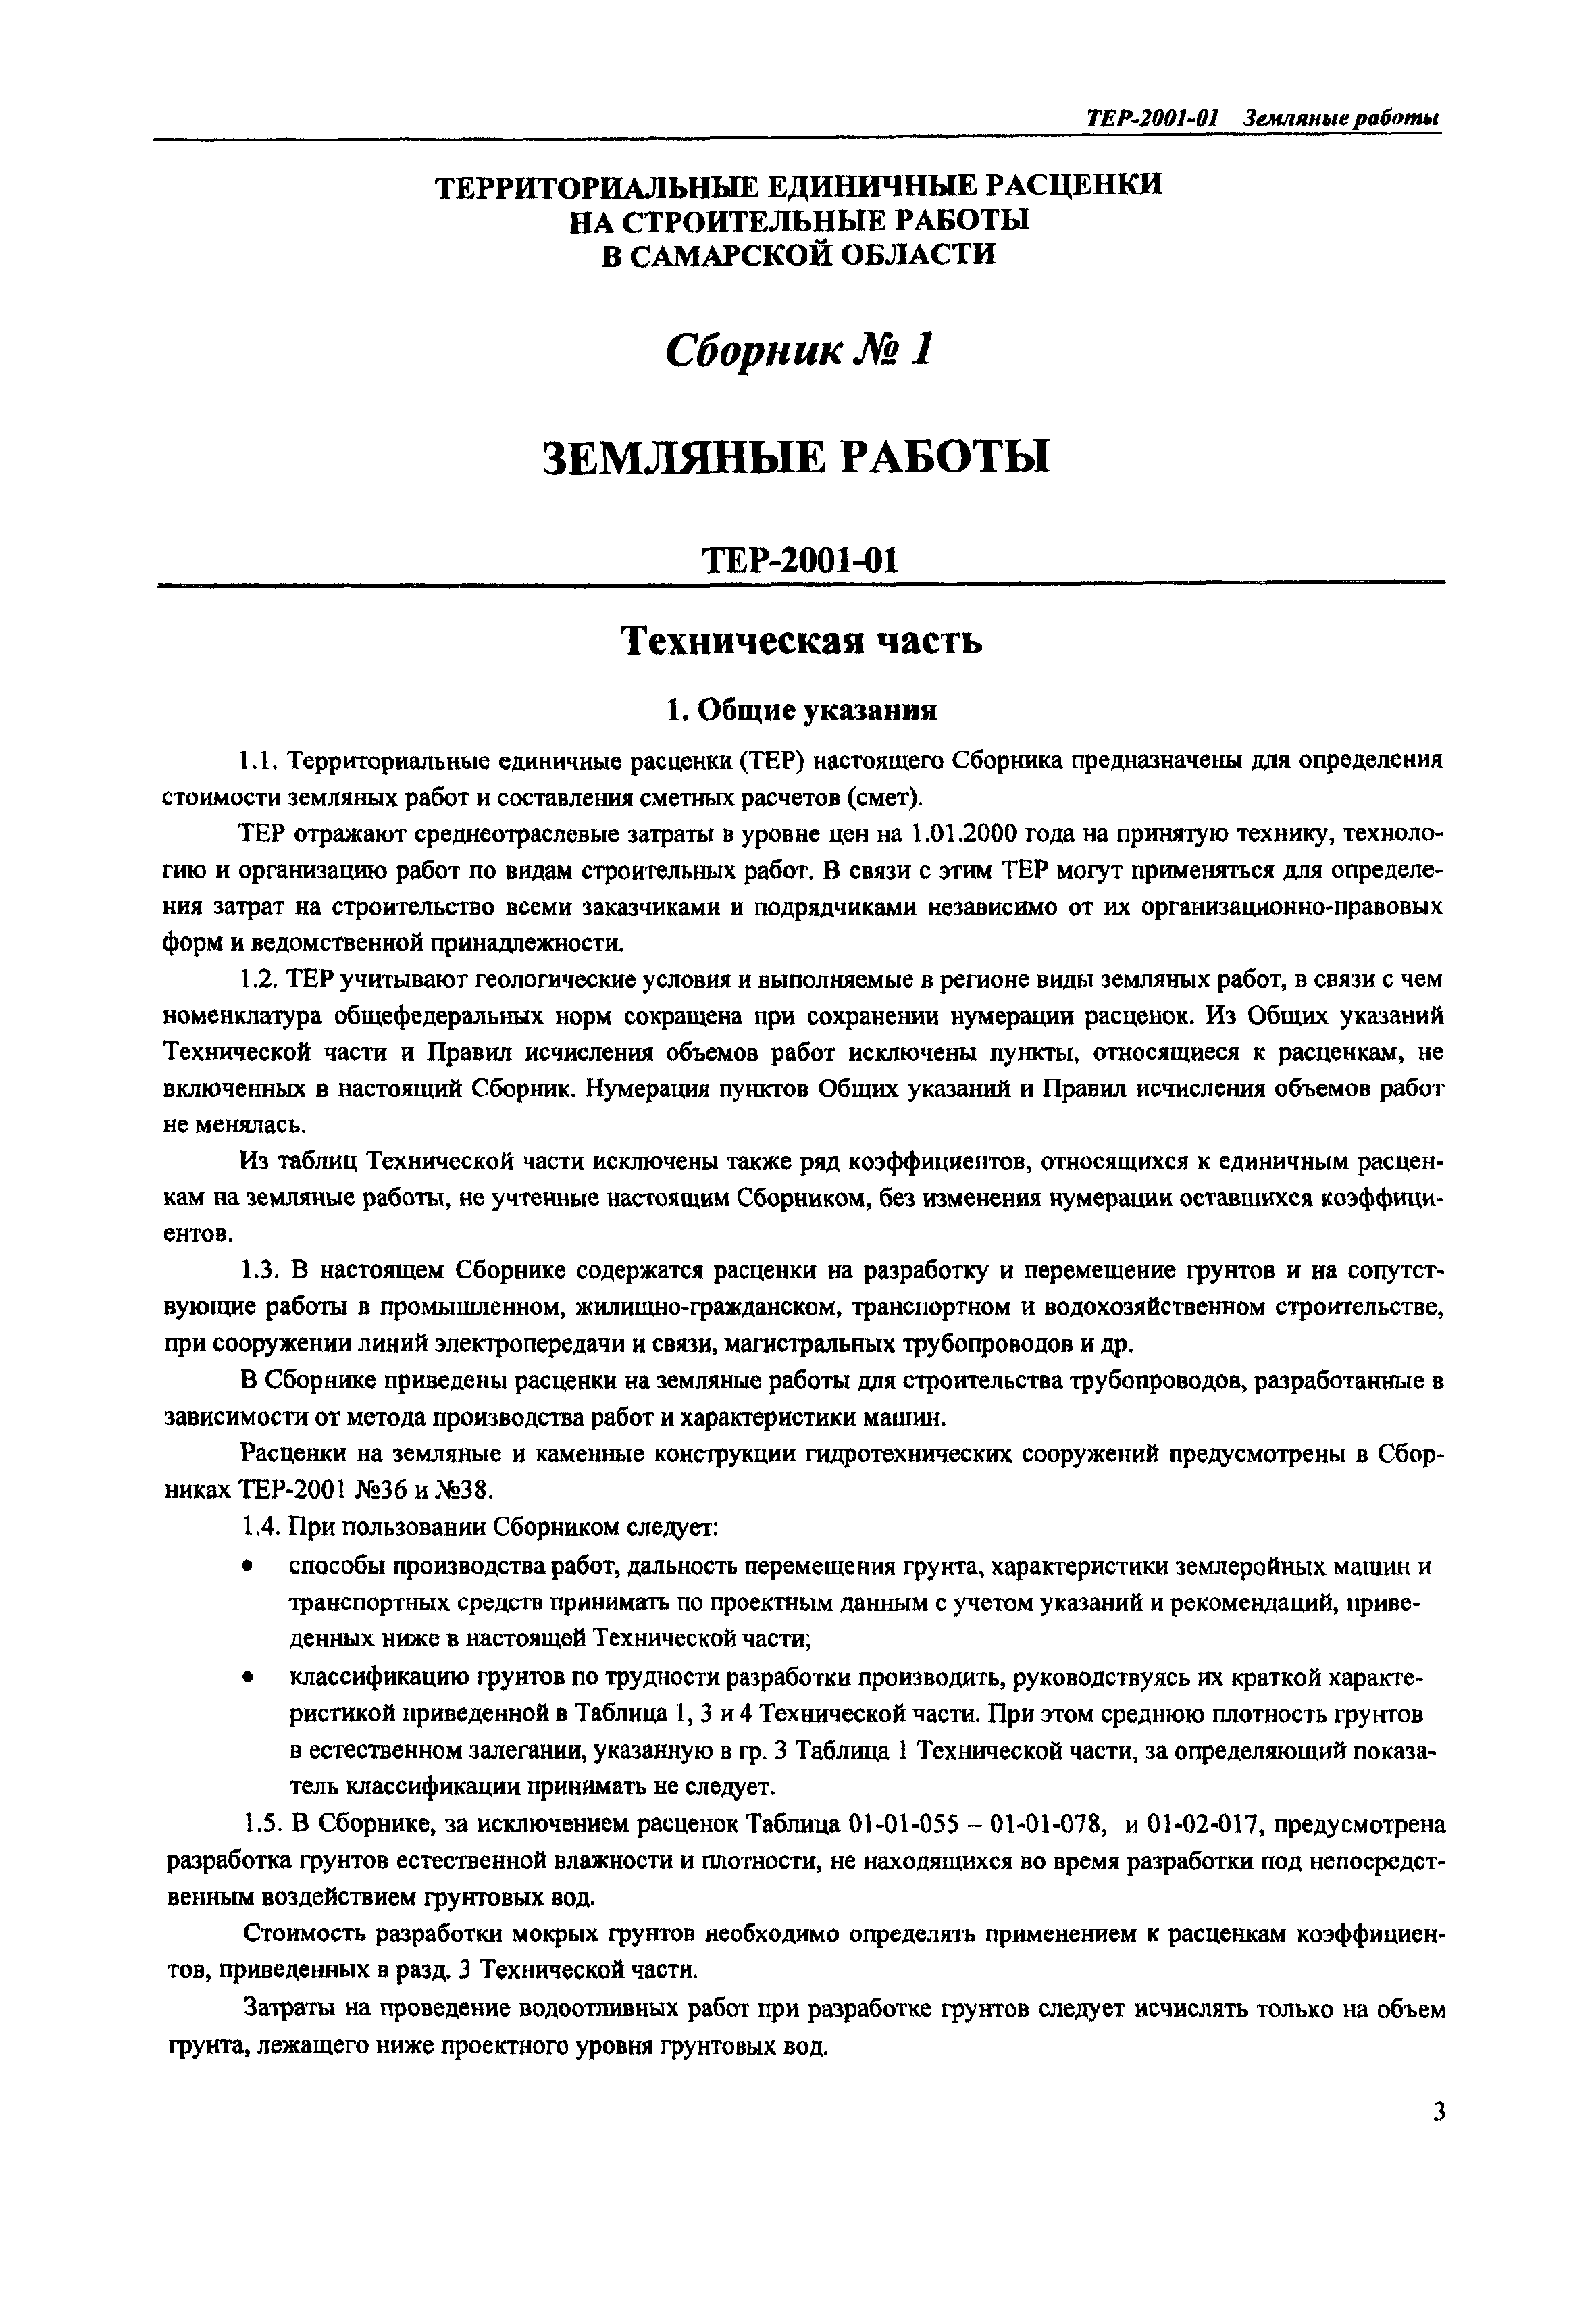 ТЕР Самарской области 2001-01